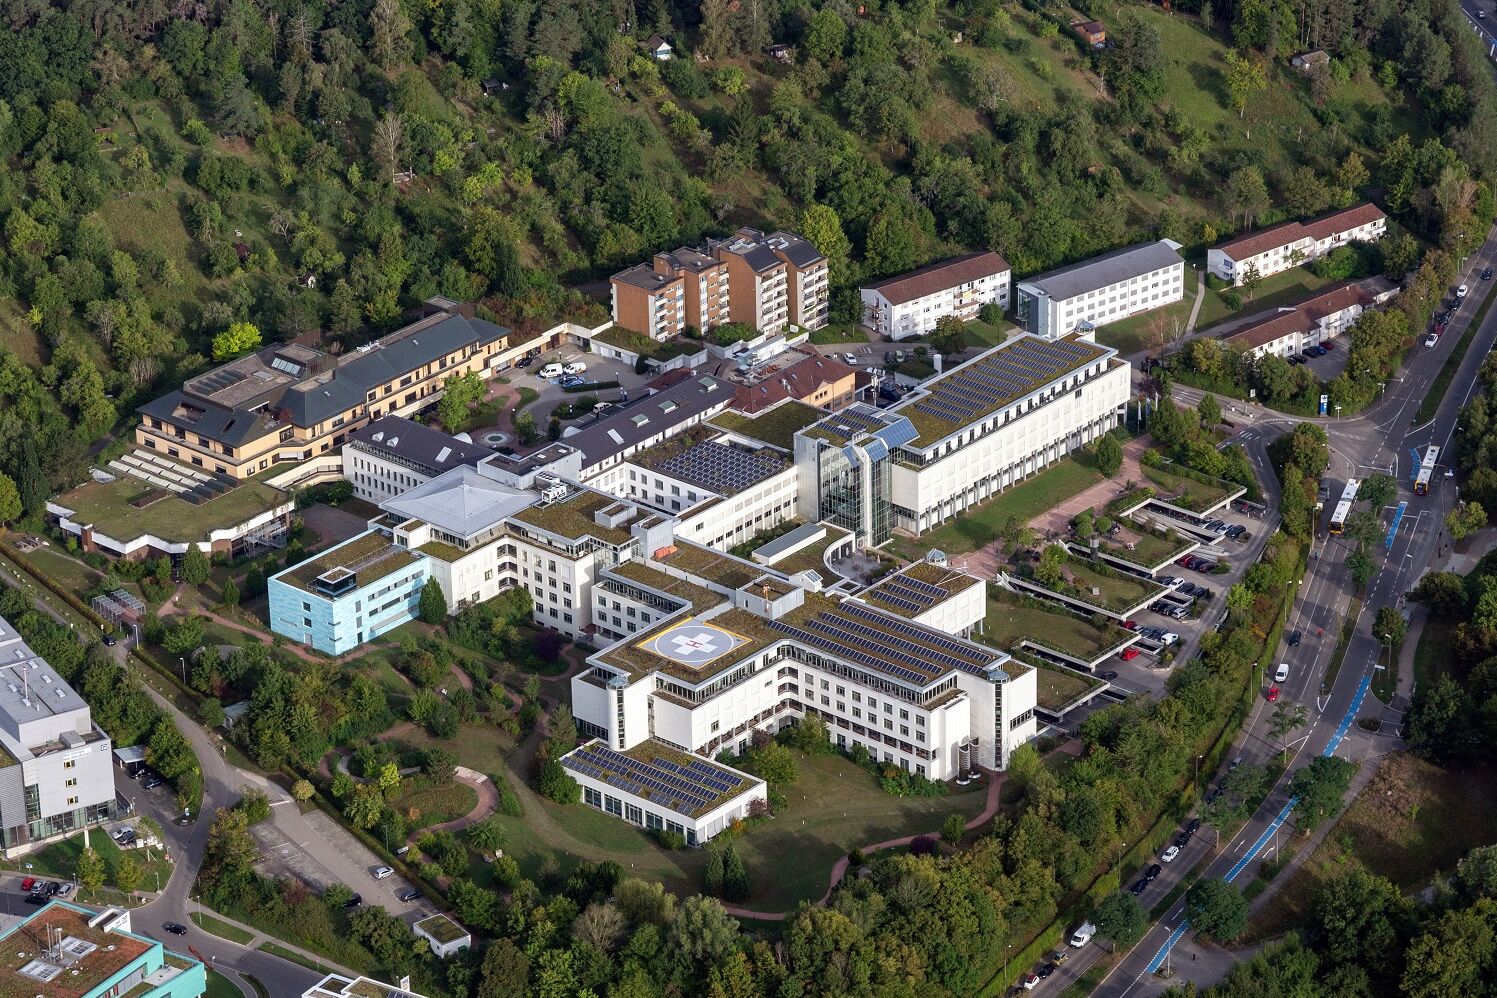 Luftbild der BG Klinik Tübingen mit Hubschrauberlandeplatz.